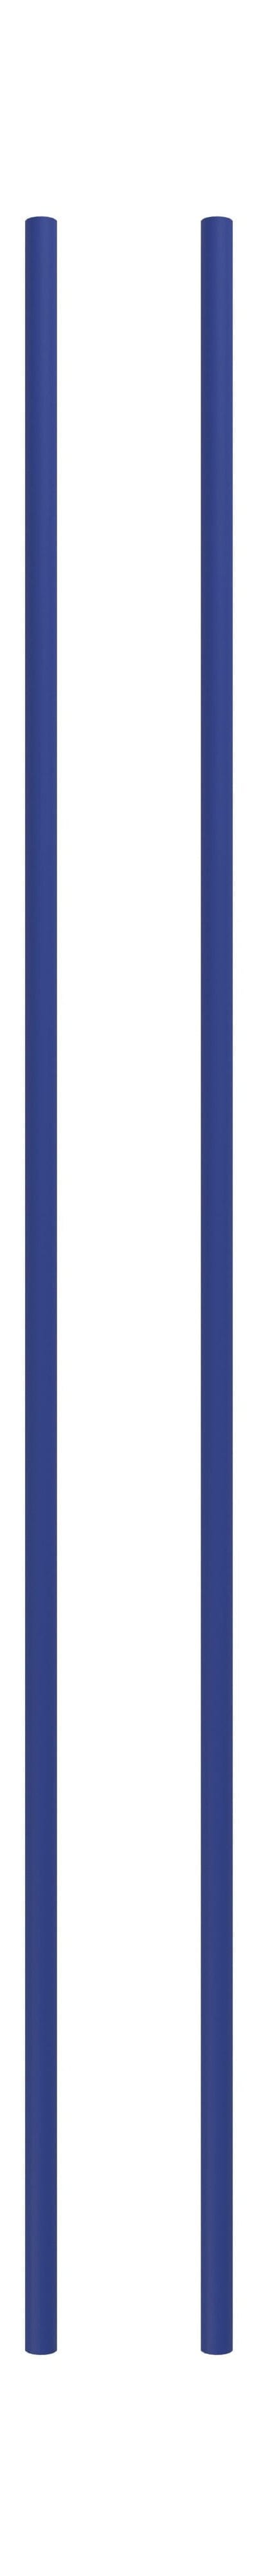 Moebe Système de étagères / étagères murales jambe de 115 cm bleu de profondeur, ensemble de 2